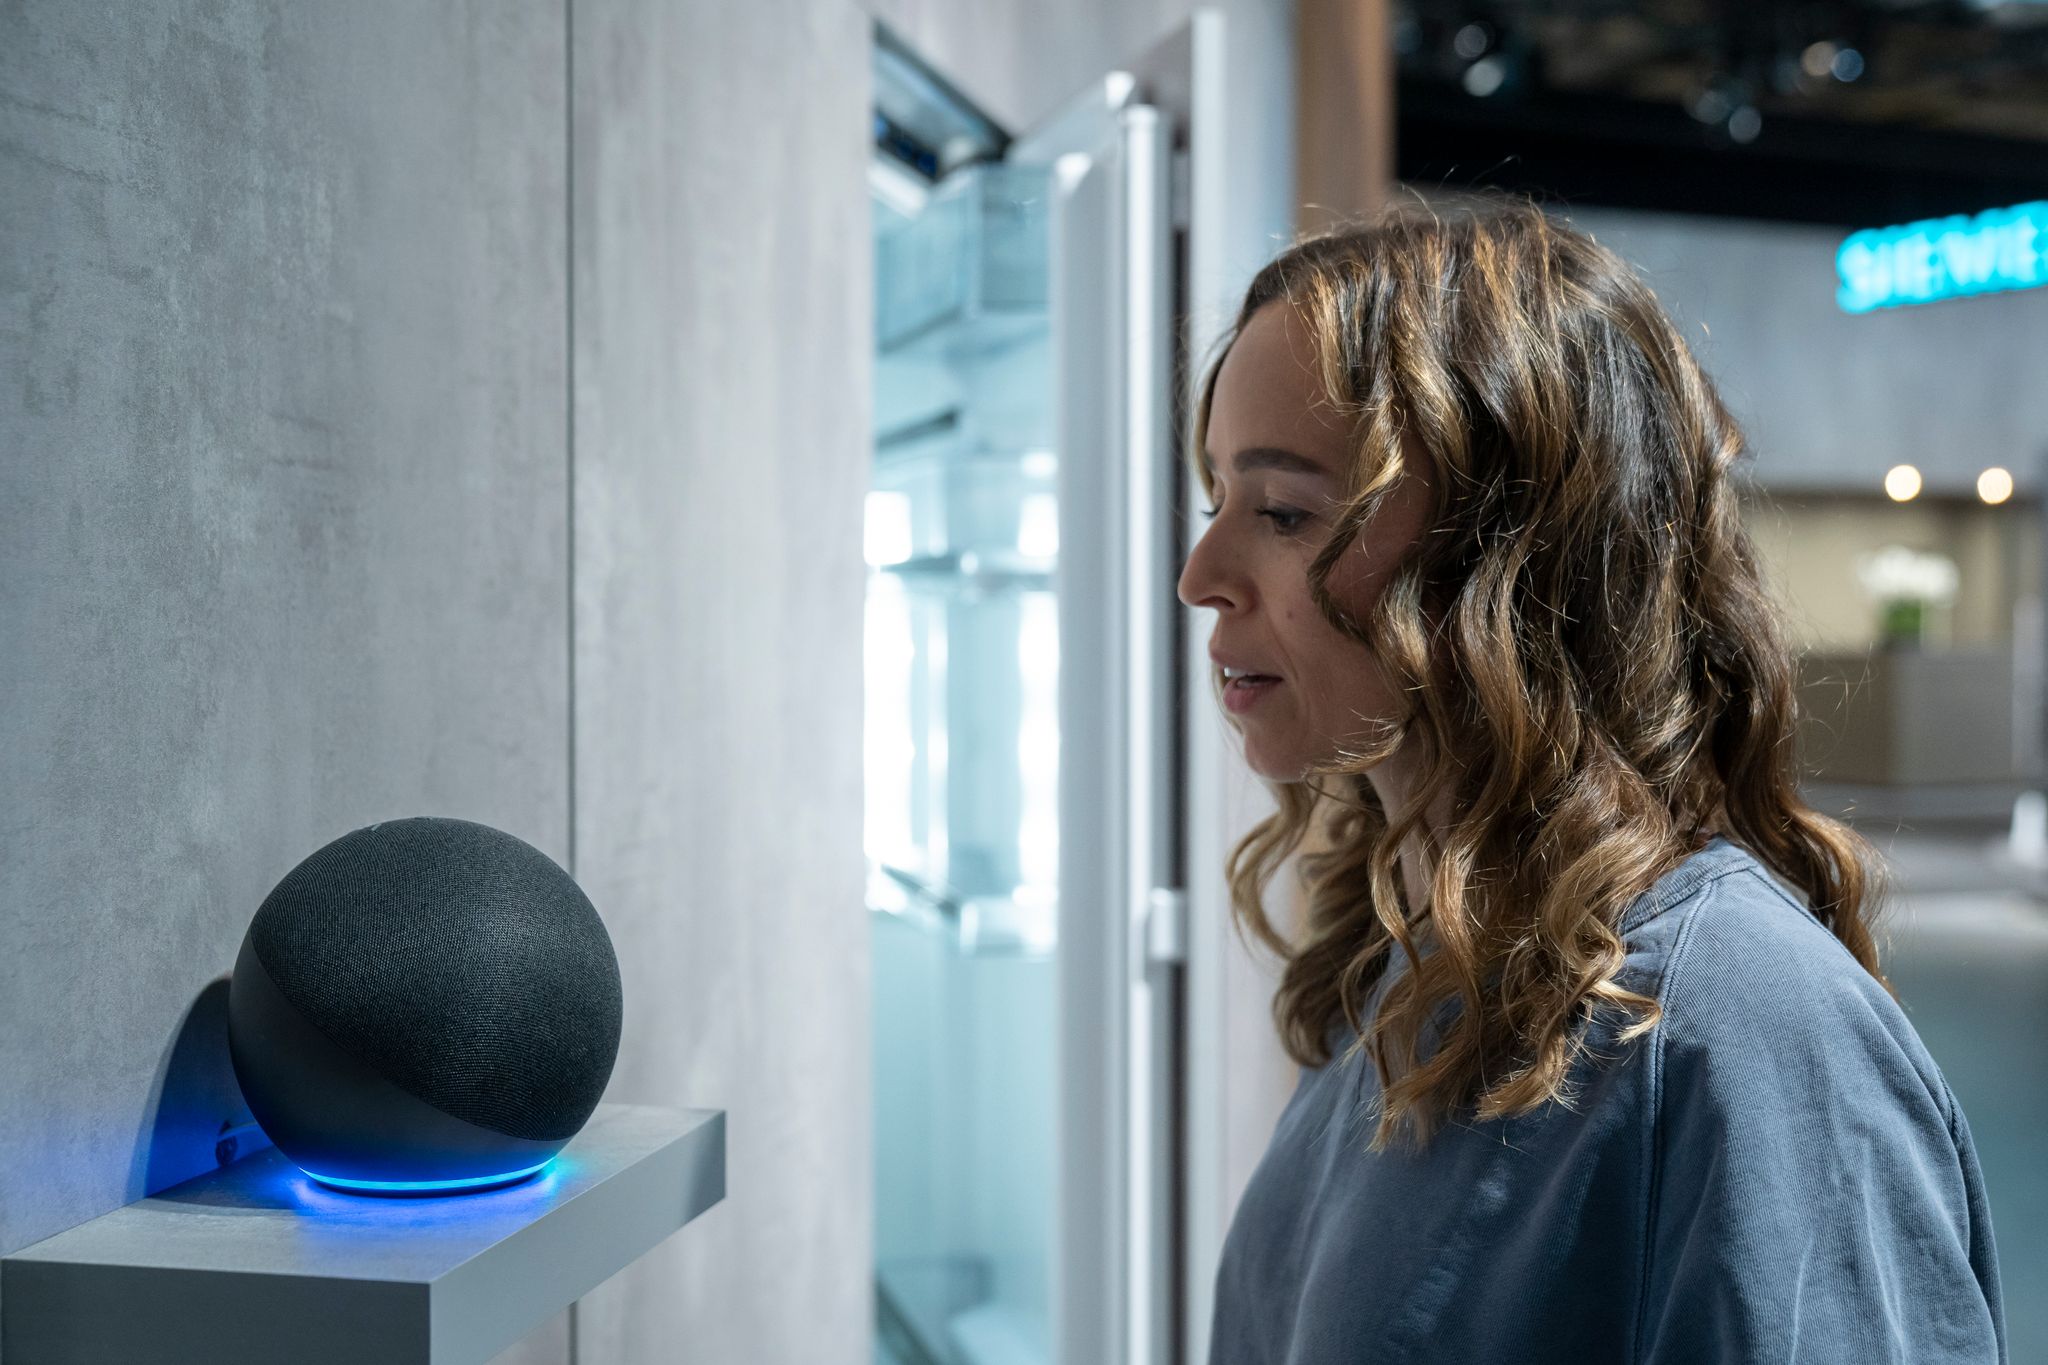 Con la ayuda del asistente de voz Alexa de Amazon los usuarios pueden controlar el resto de sus dispositivos conectados a un ecosistema Smart Home. Foto: Florian Schuh/dpa